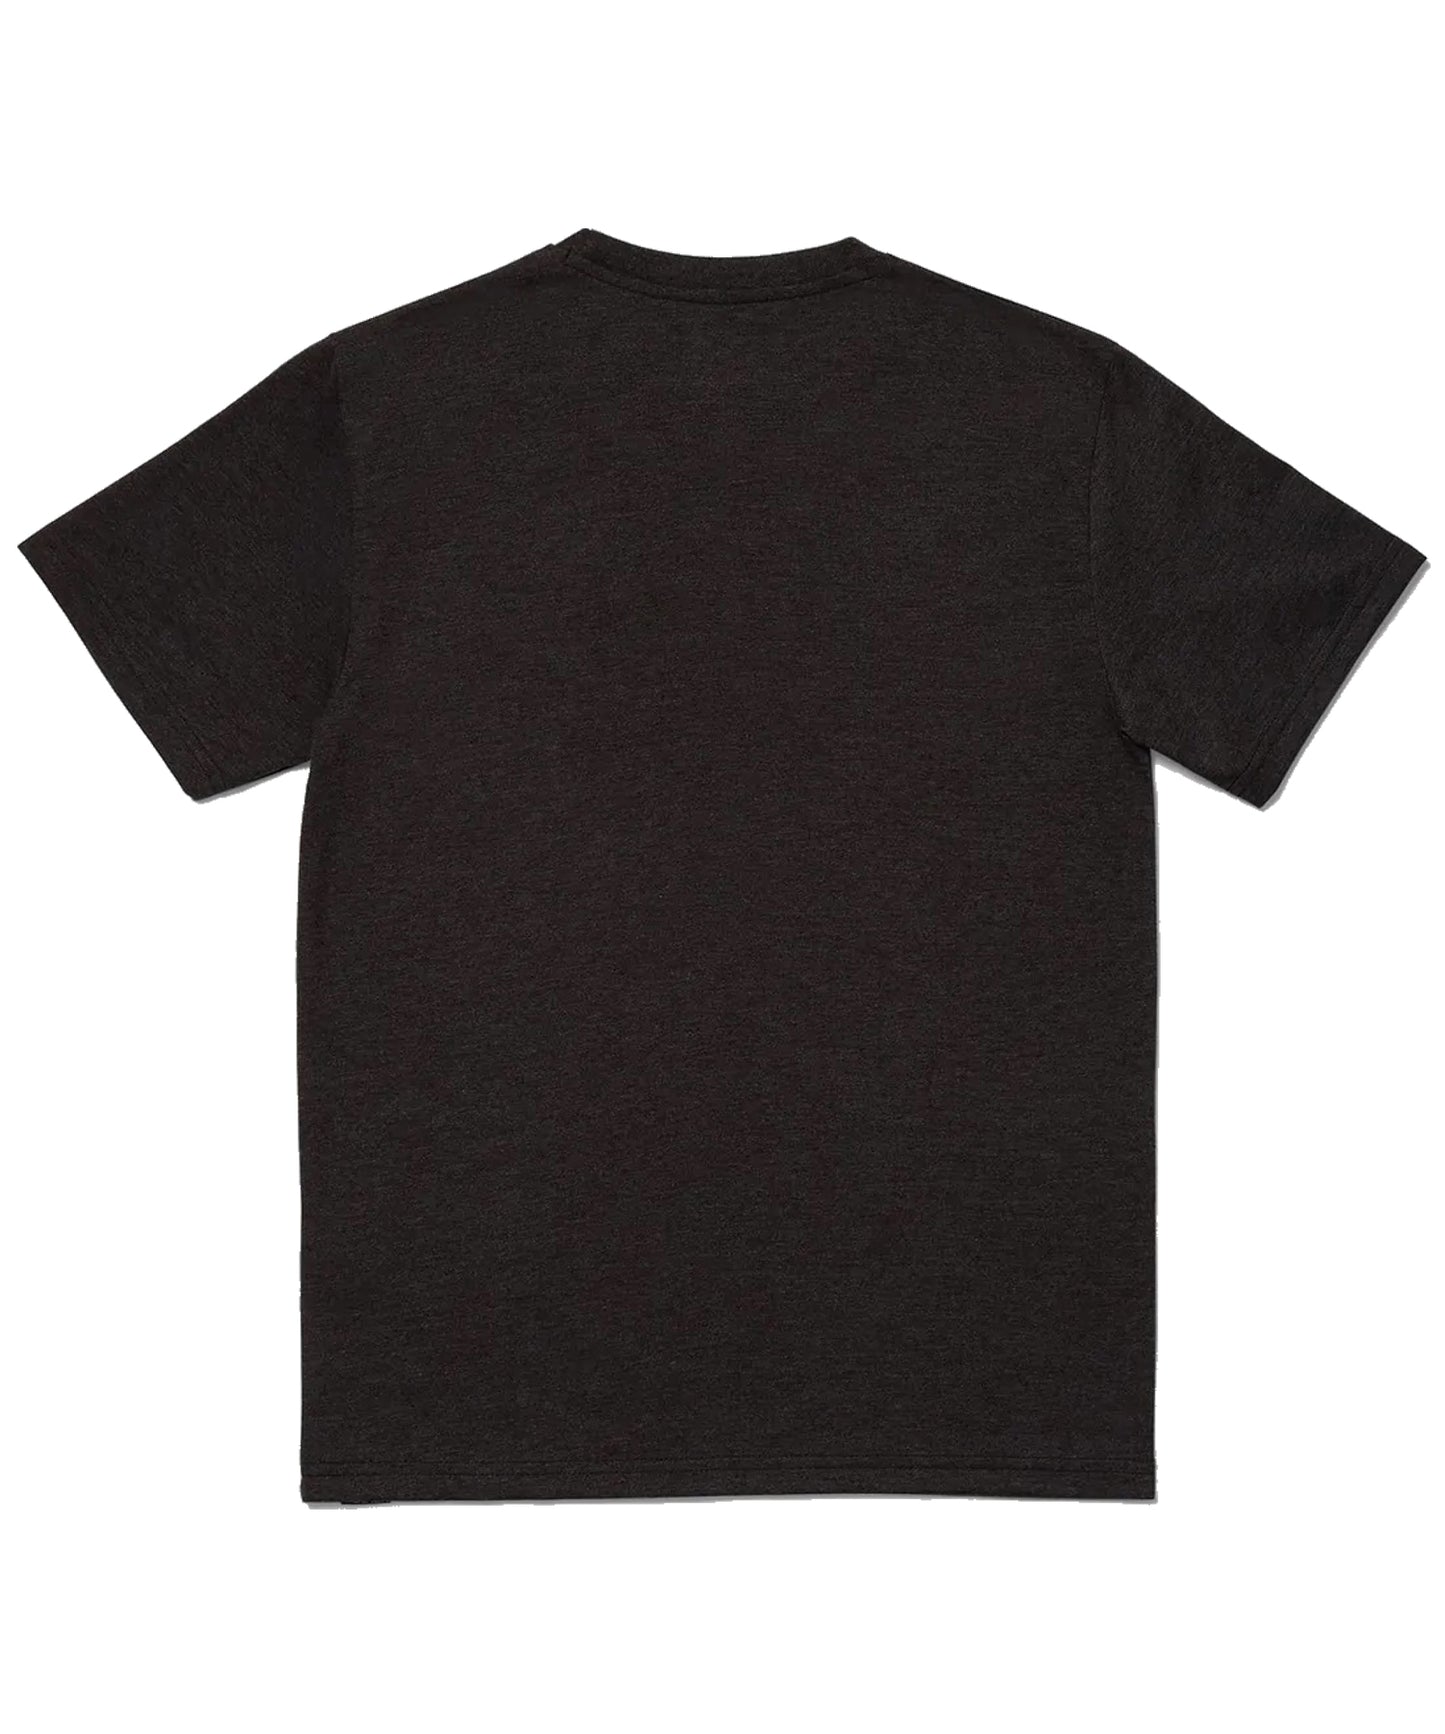 volcom-volcom-youth-camiseta-big-blot--camiseta para niño/a-color negro-cuello redondo-algodón orgánico-serigrafia volcom en todo el pecho.